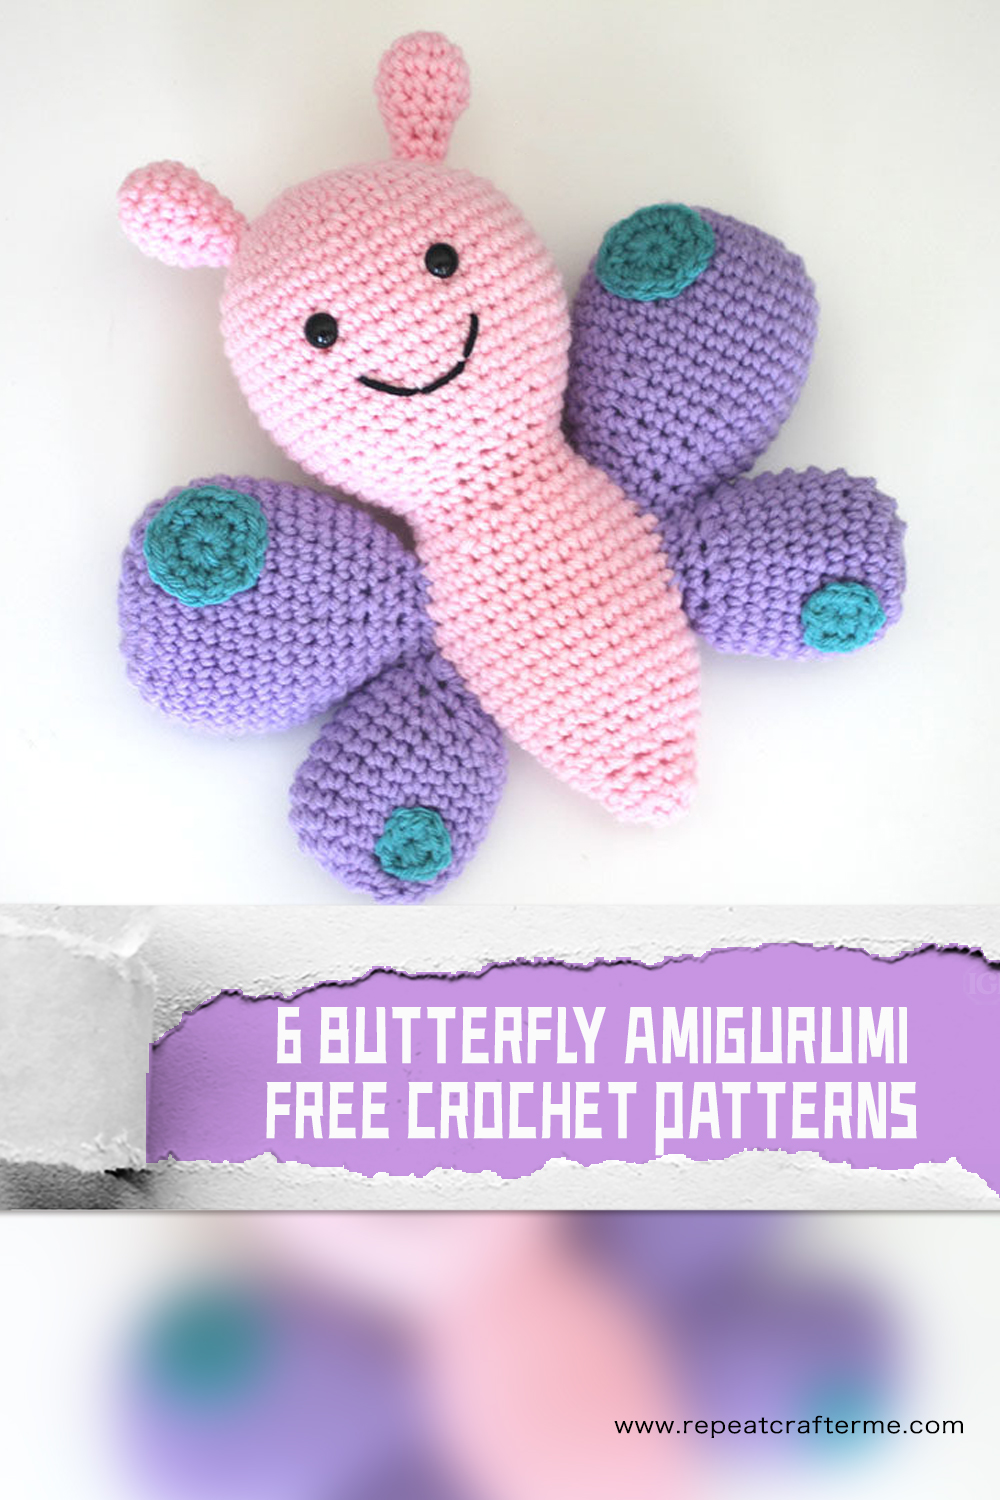 6 Butterfly Amigurumi FREE Crochet Patterns